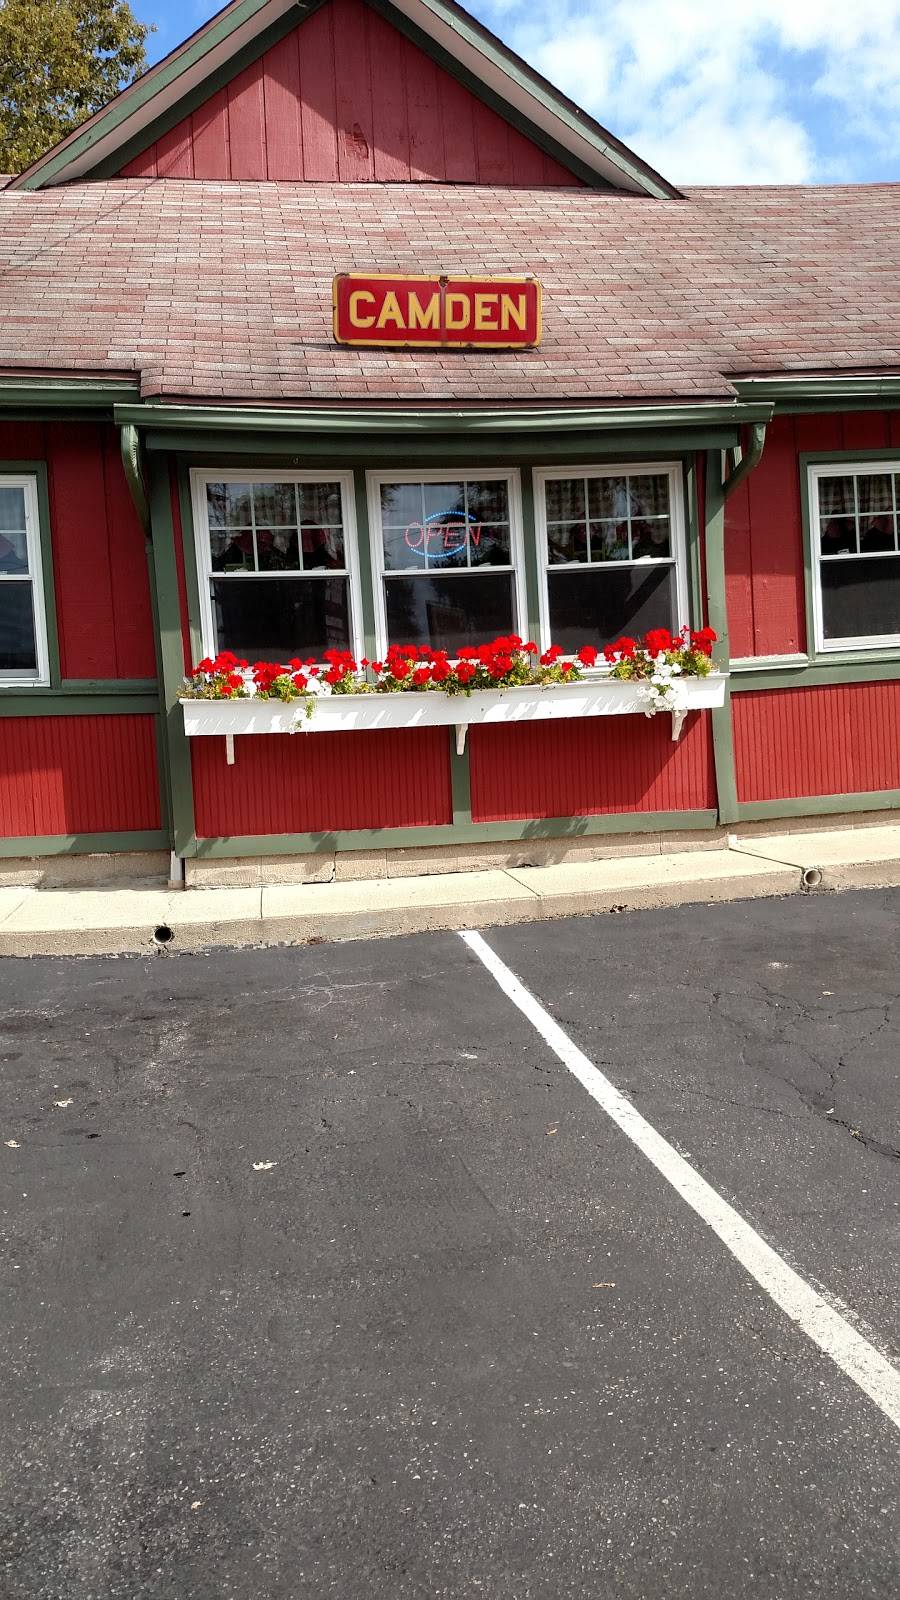 Depot Dairy Bar & Restaurant | restaurant | 90 Depot St, Camden, OH 45311, USA | 9374523653 OR +1 937-452-3653